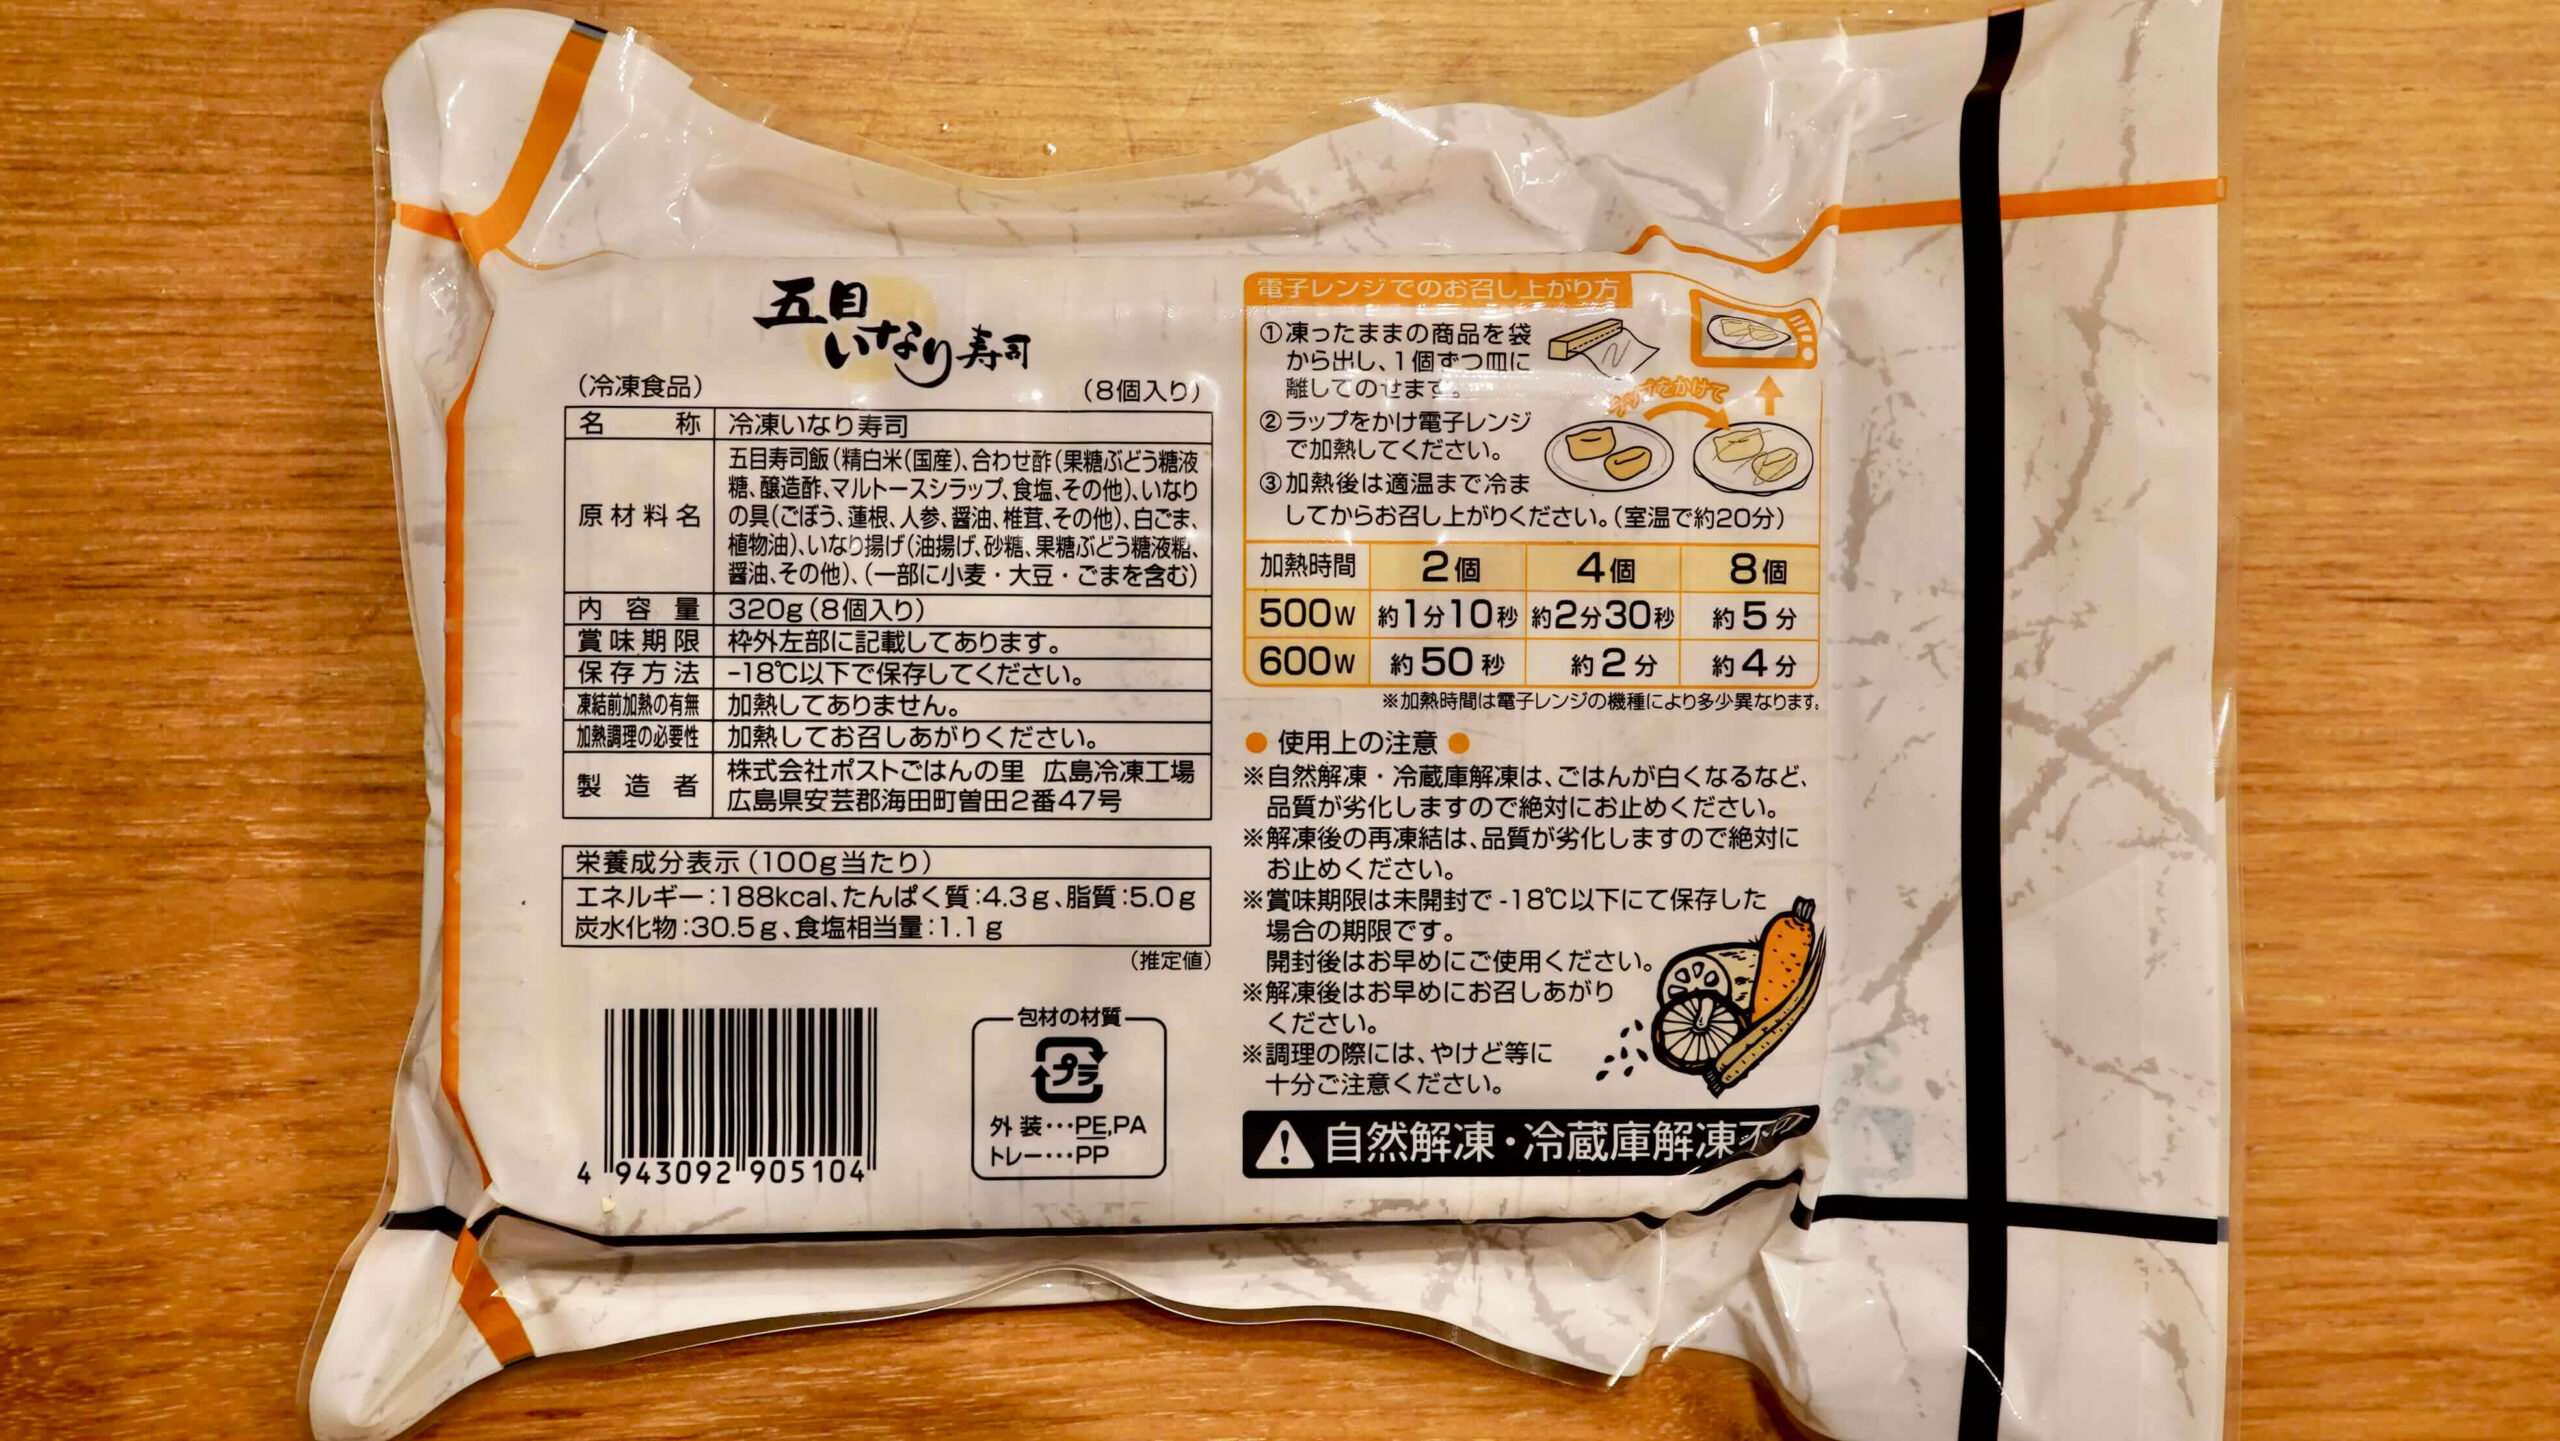 「ごはんの里」の冷凍食品「五目いなり寿司」のパッケージ裏面の写真